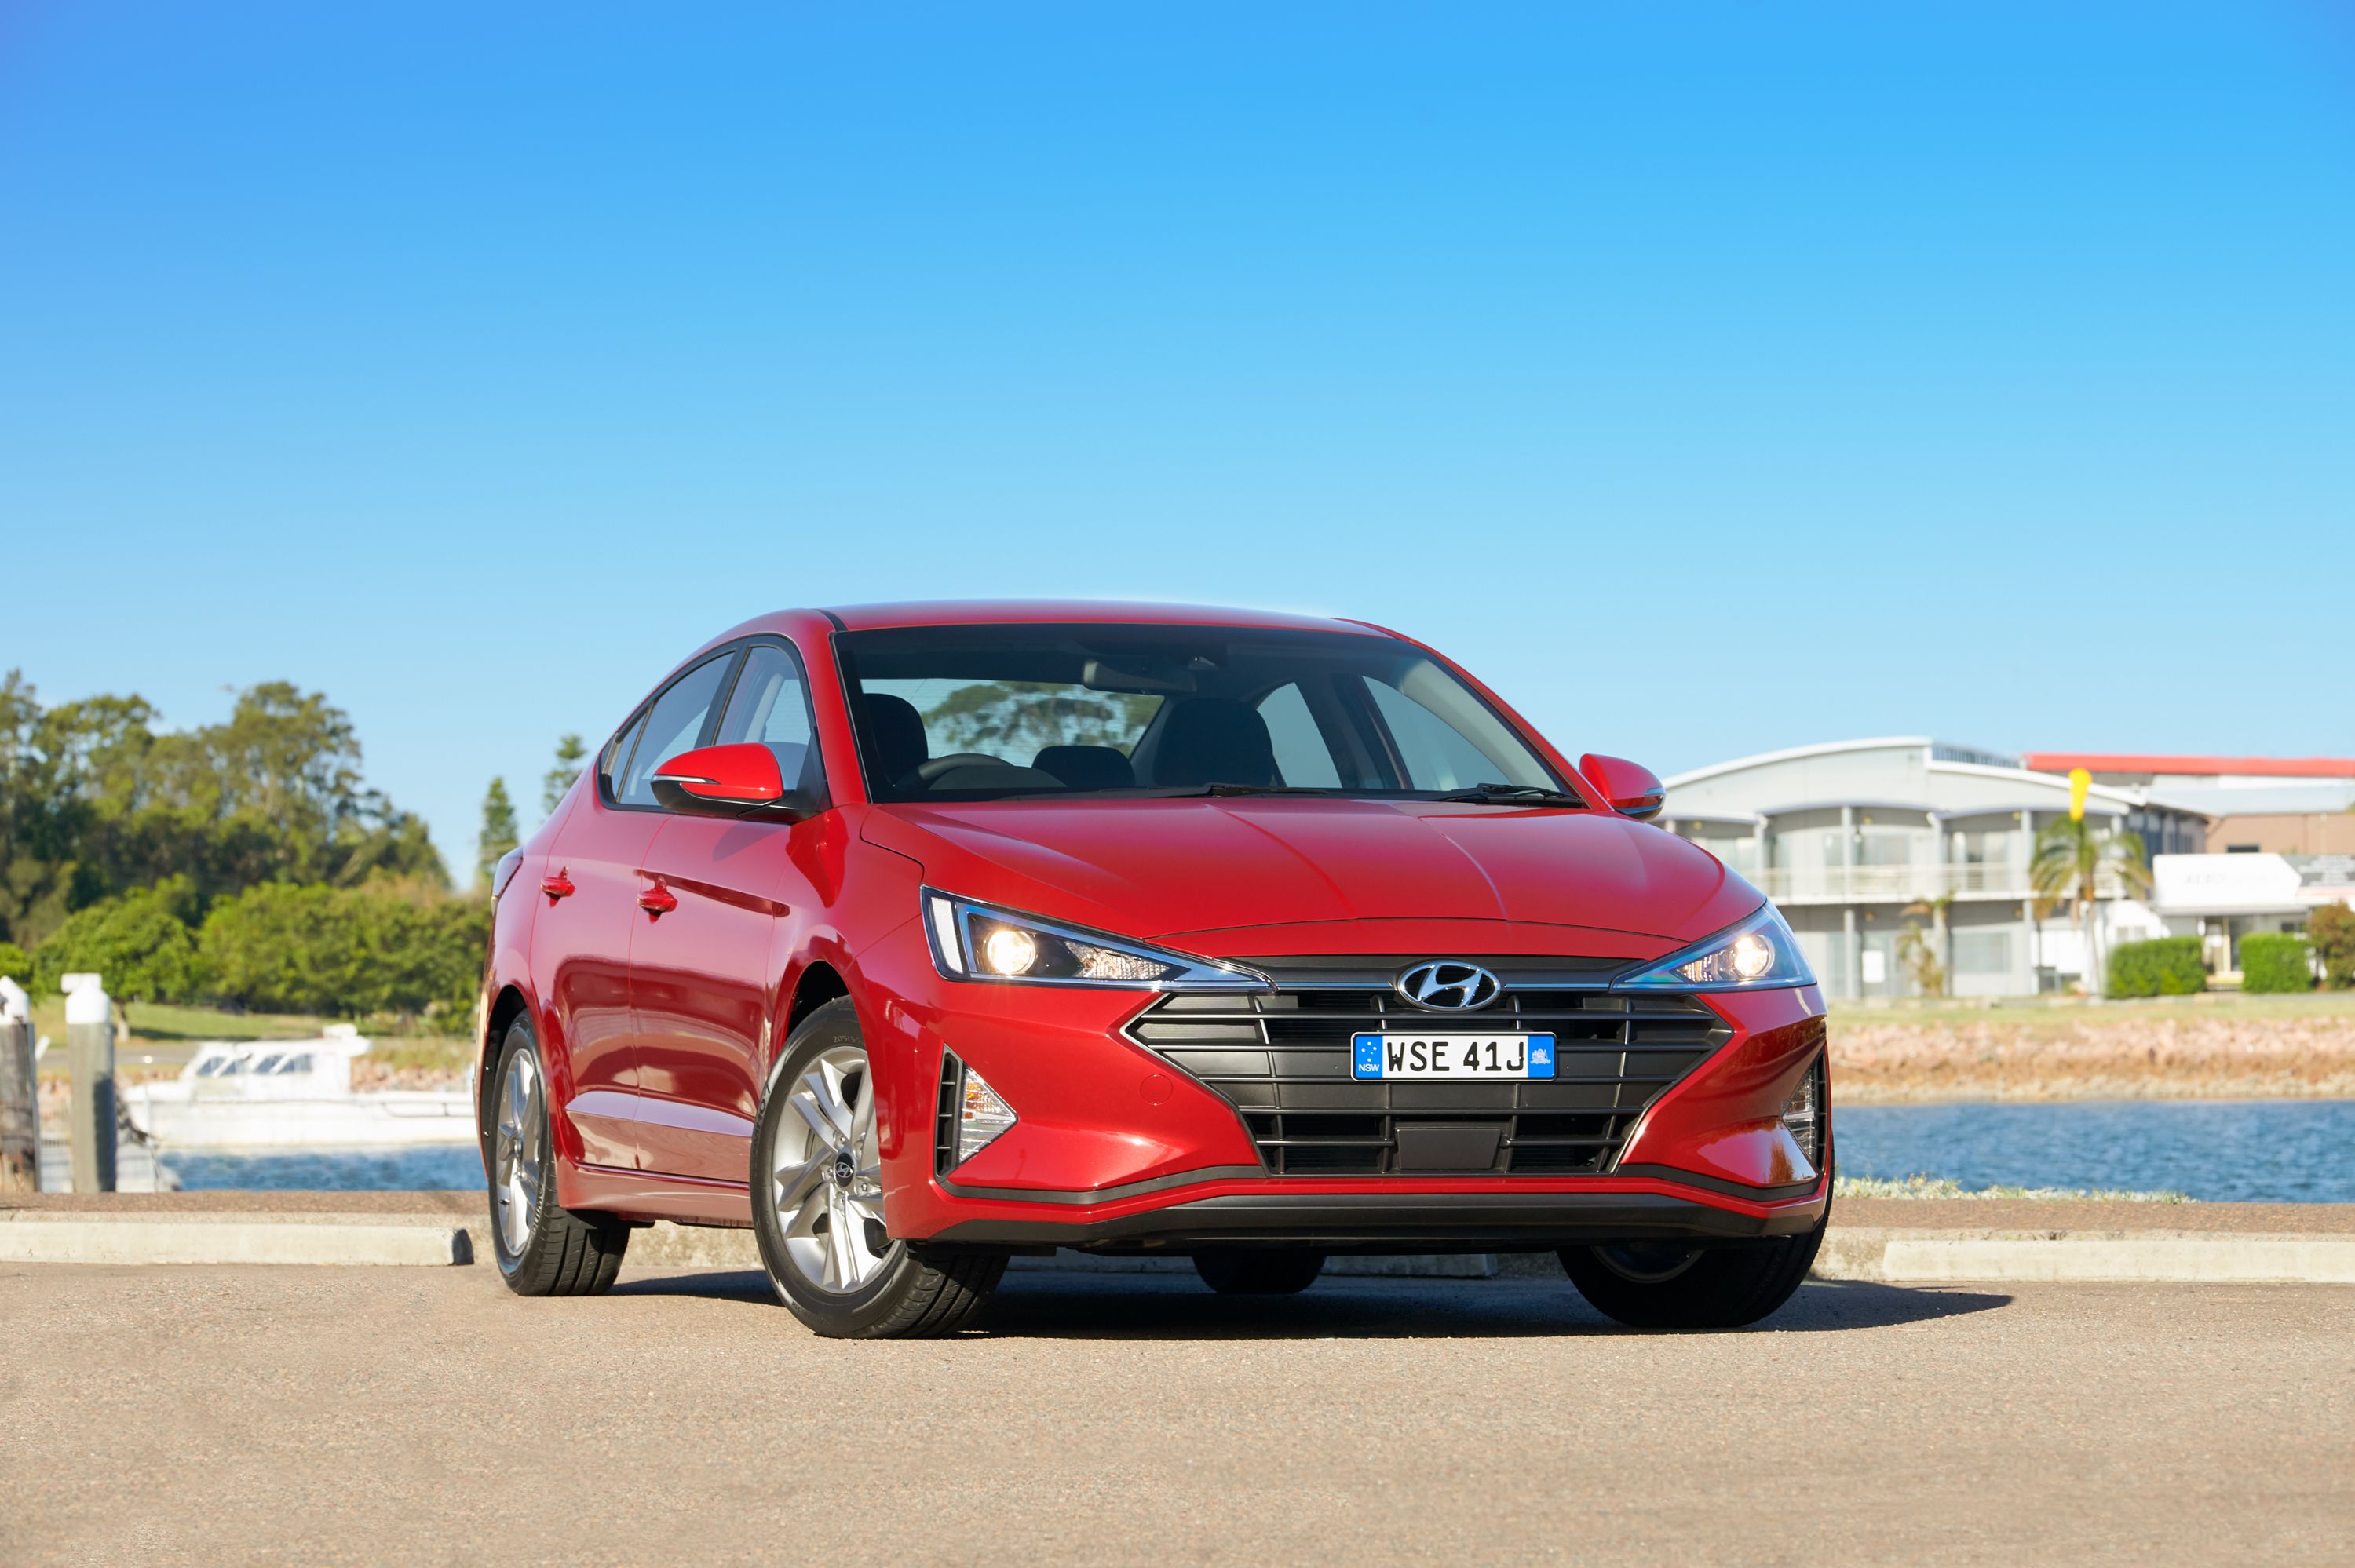 2020 Hyundai Elantra price and specs  CarExpert